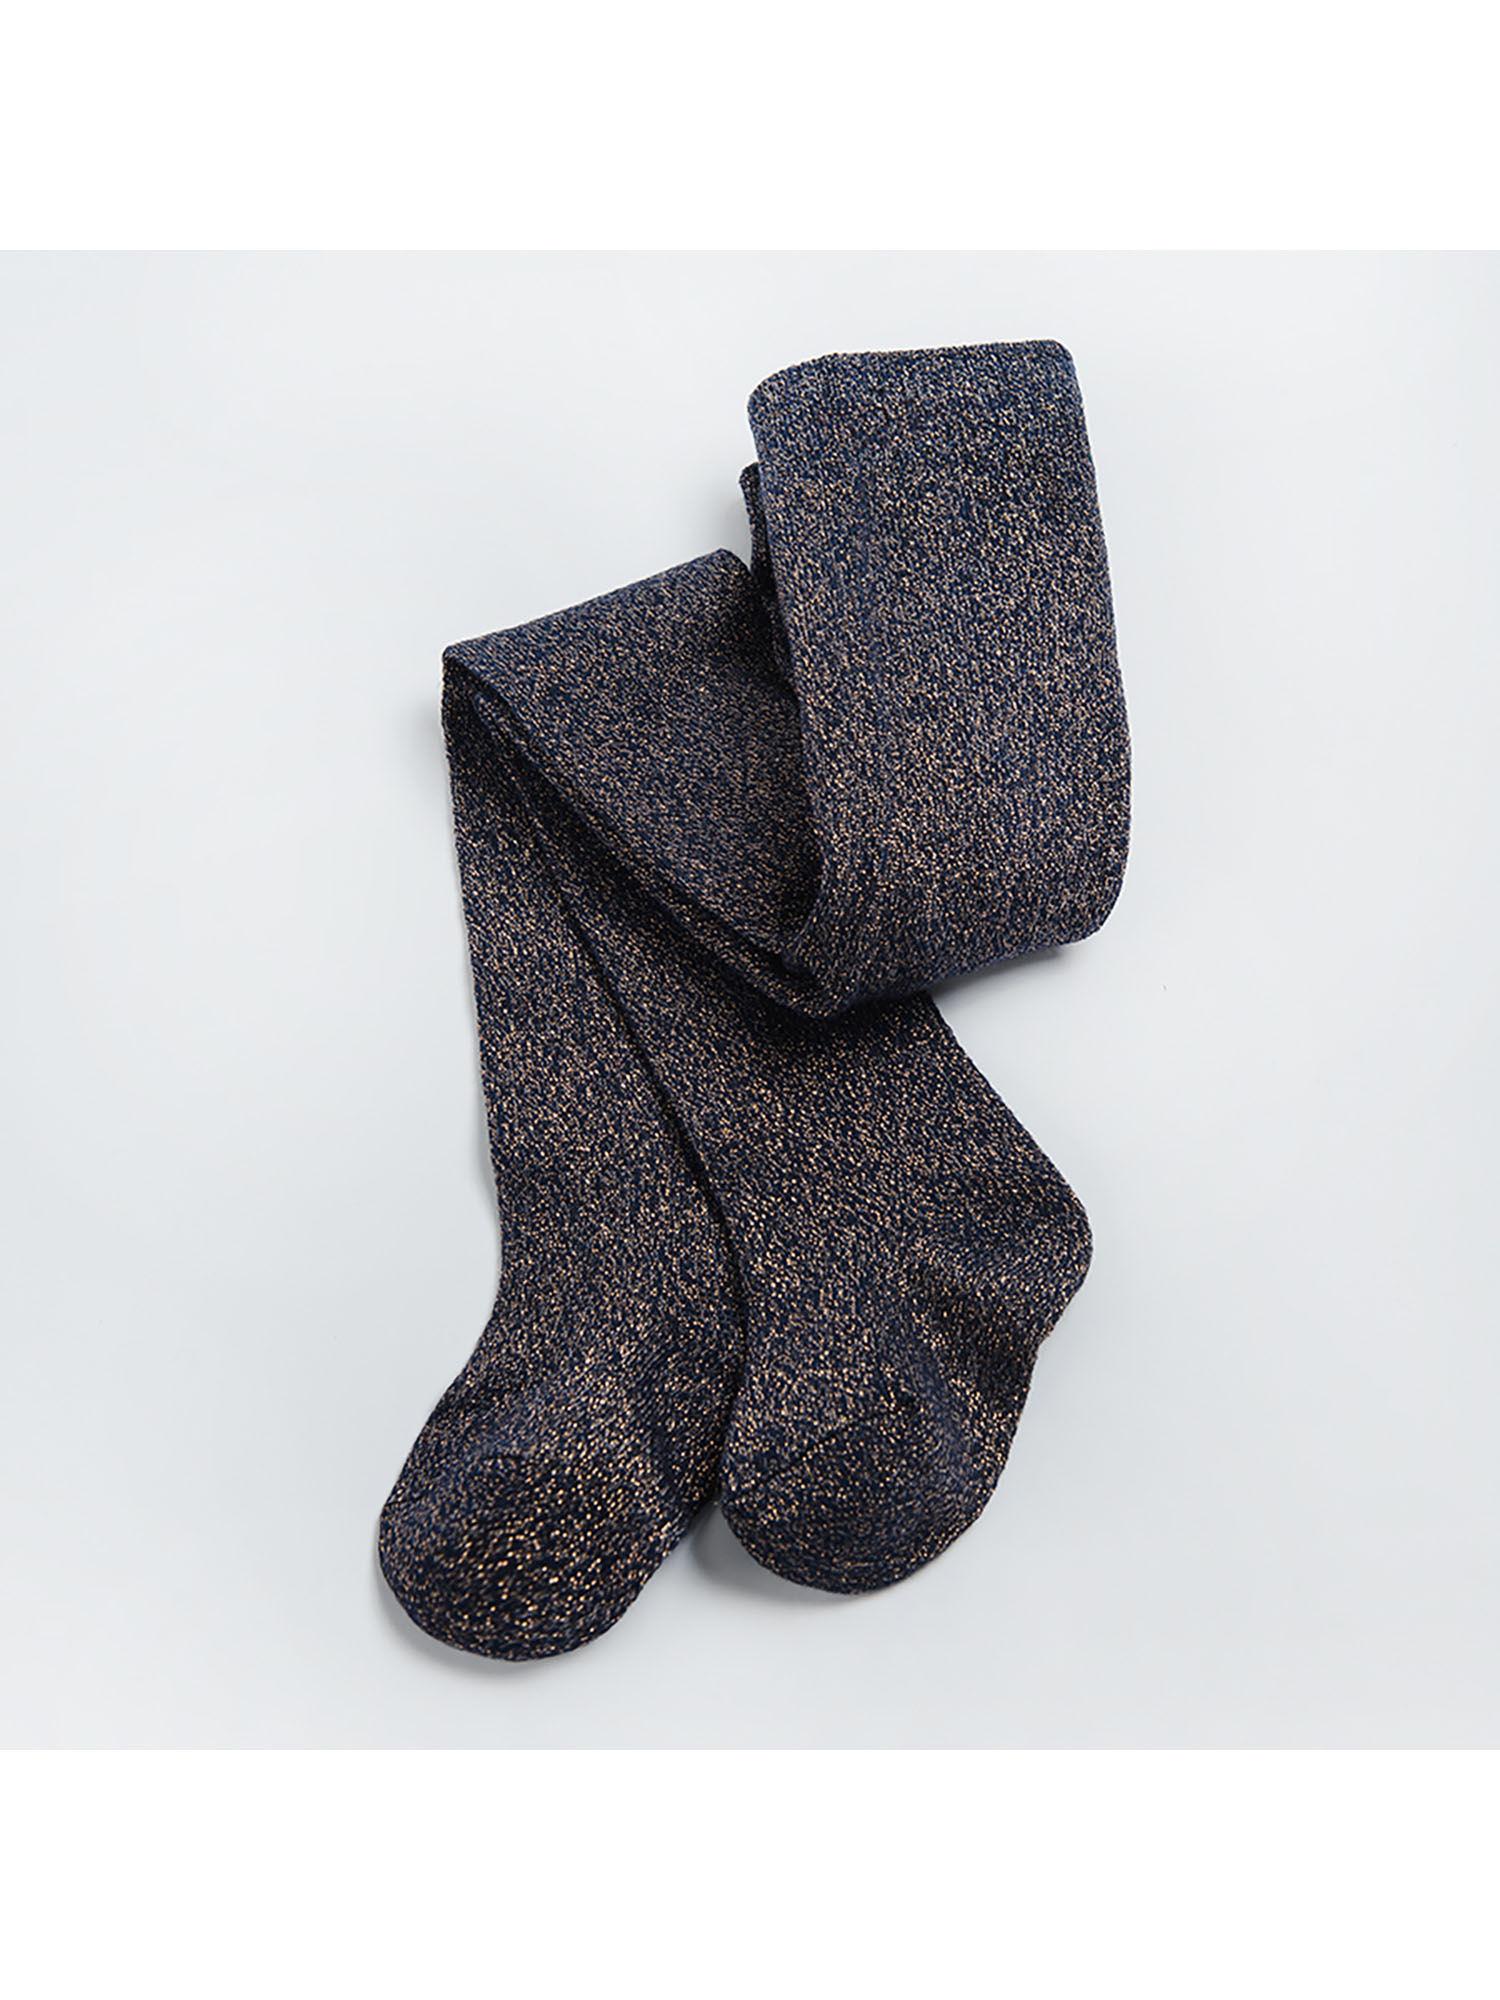 girls navy blue woven socks